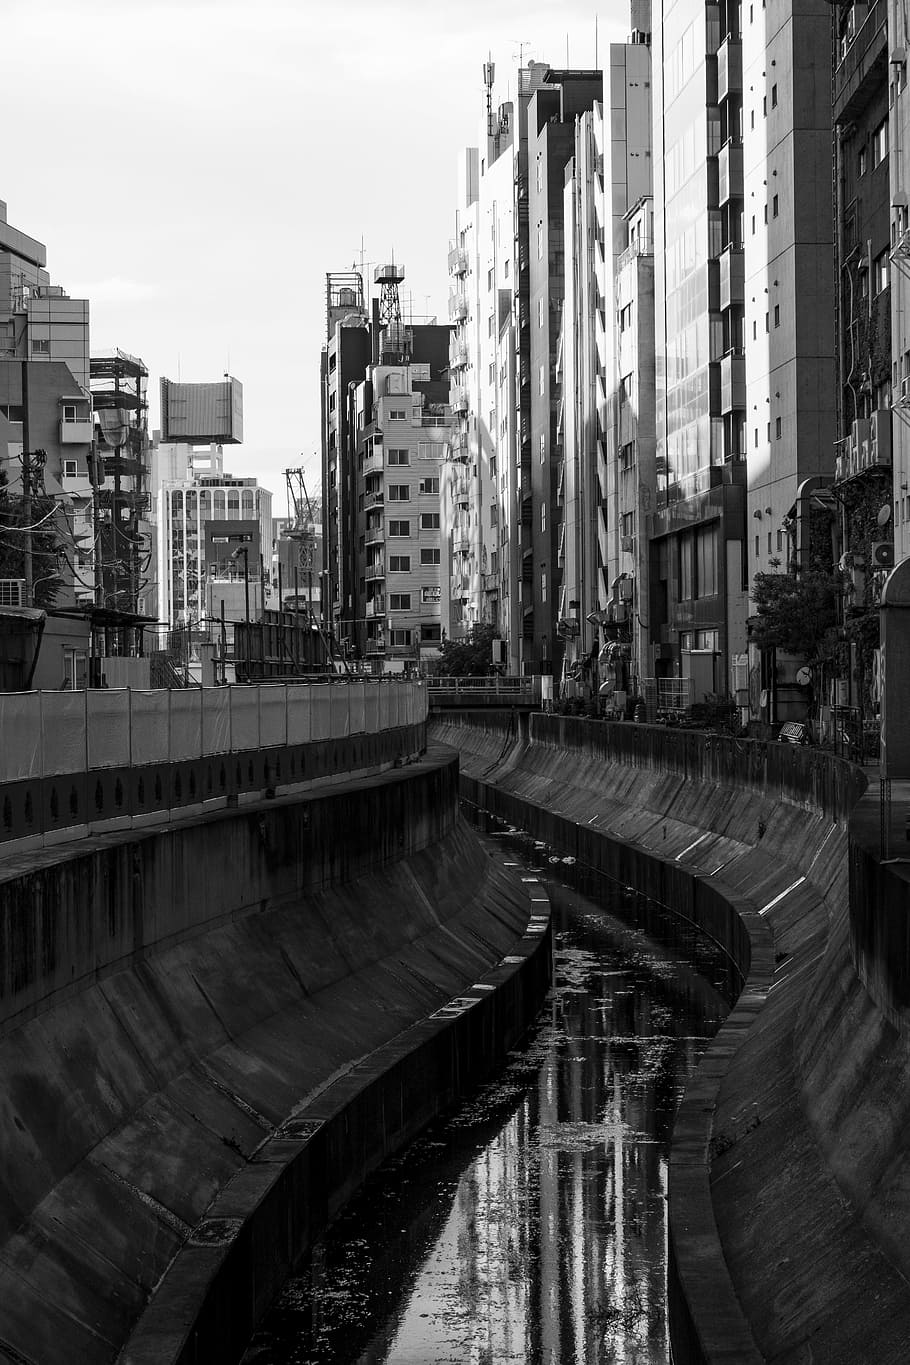 río, shibuya, área metropolitana de tokio, ciudad, sucia, urbana, estructura construida, arquitectura, exterior del edificio, edificio